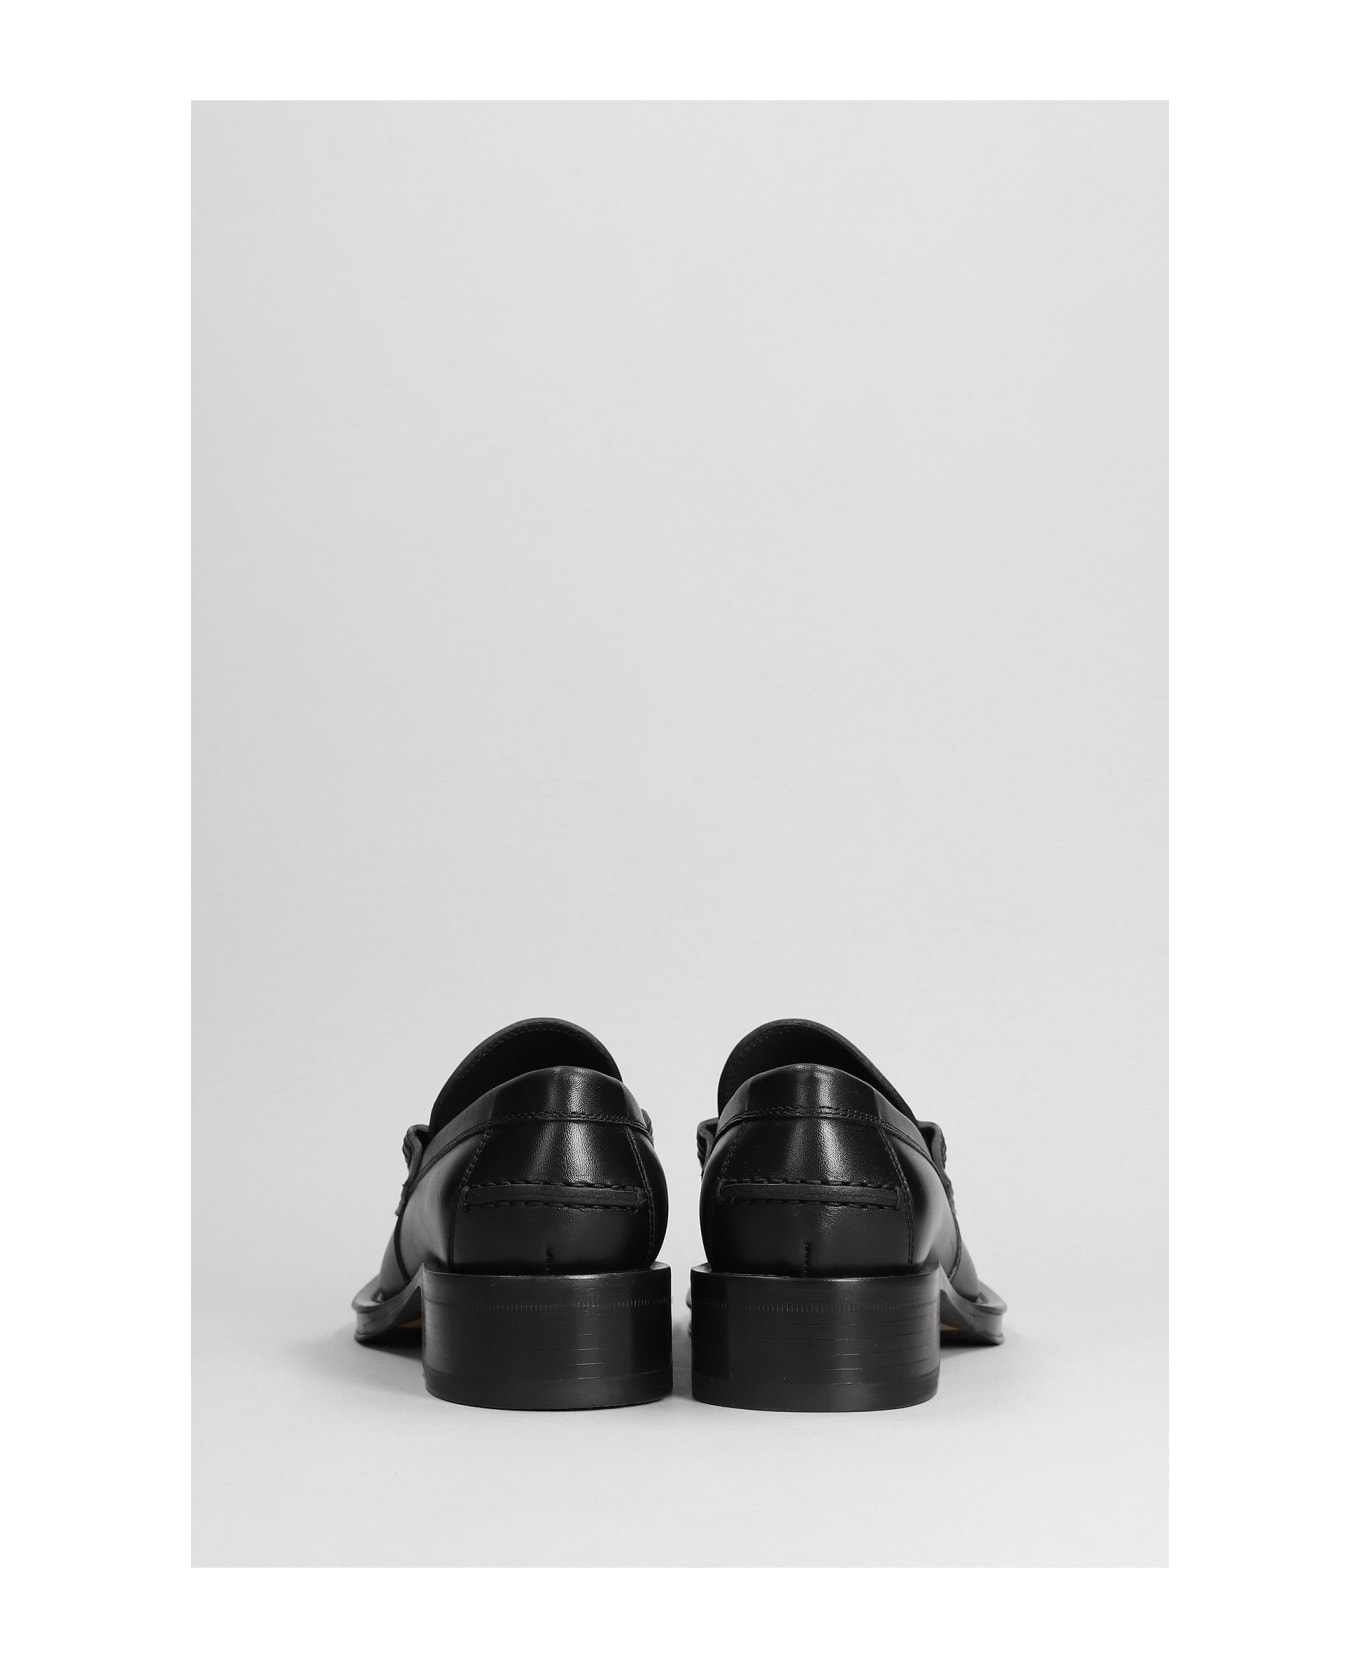 Lanvin Loafers In Black Leather - Black フラットシューズ